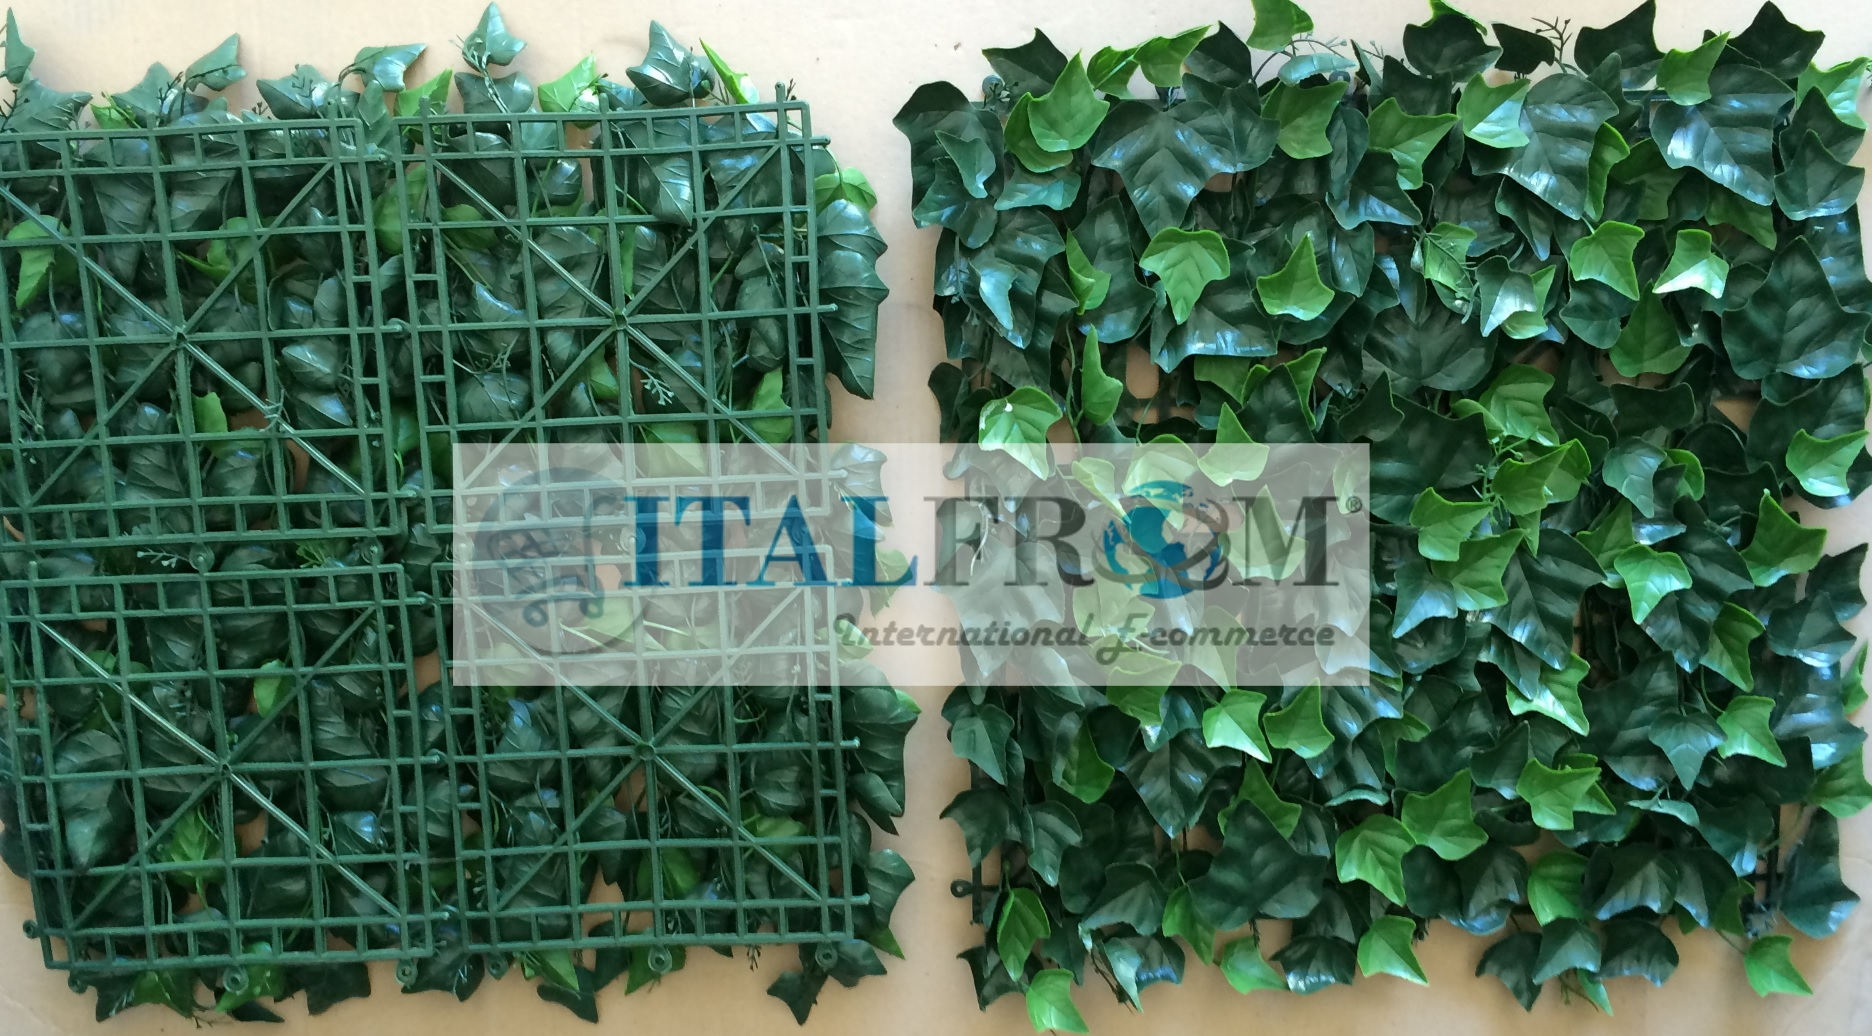 Fiori Decorativi Foglia Artificiale Recinzione Rete Siepi Finta Edera  Decorazione Vite Simulazione Piante Verdi Arredamento Da Giardino Esterno Da  14,39 €